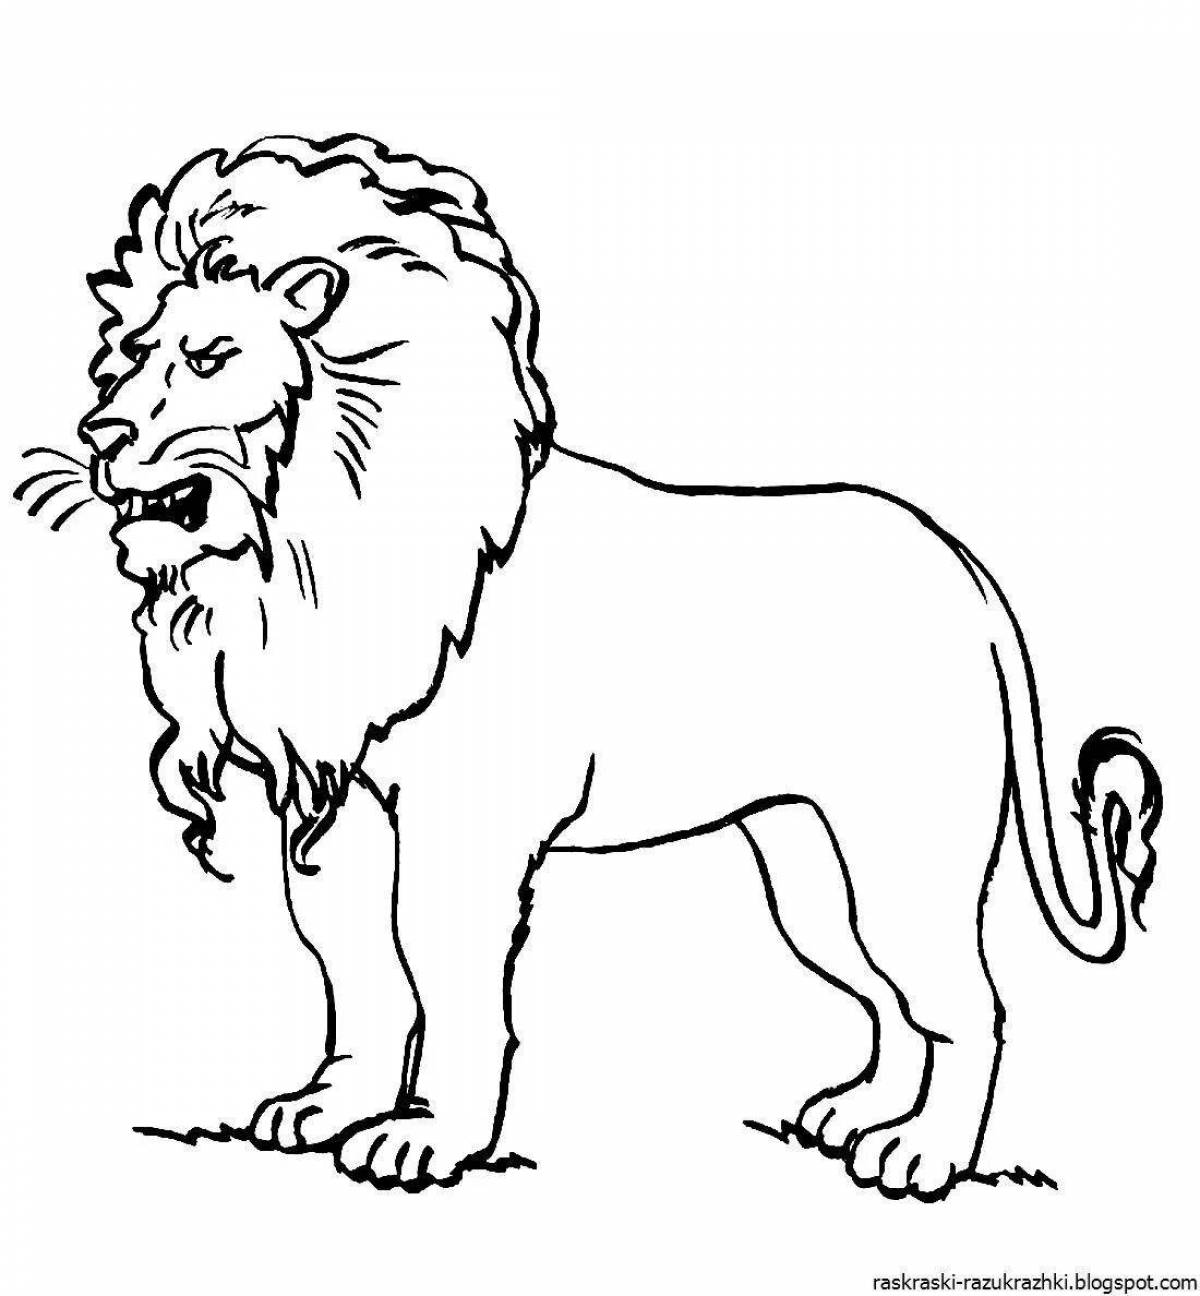 Художественный рисунок льва для детей